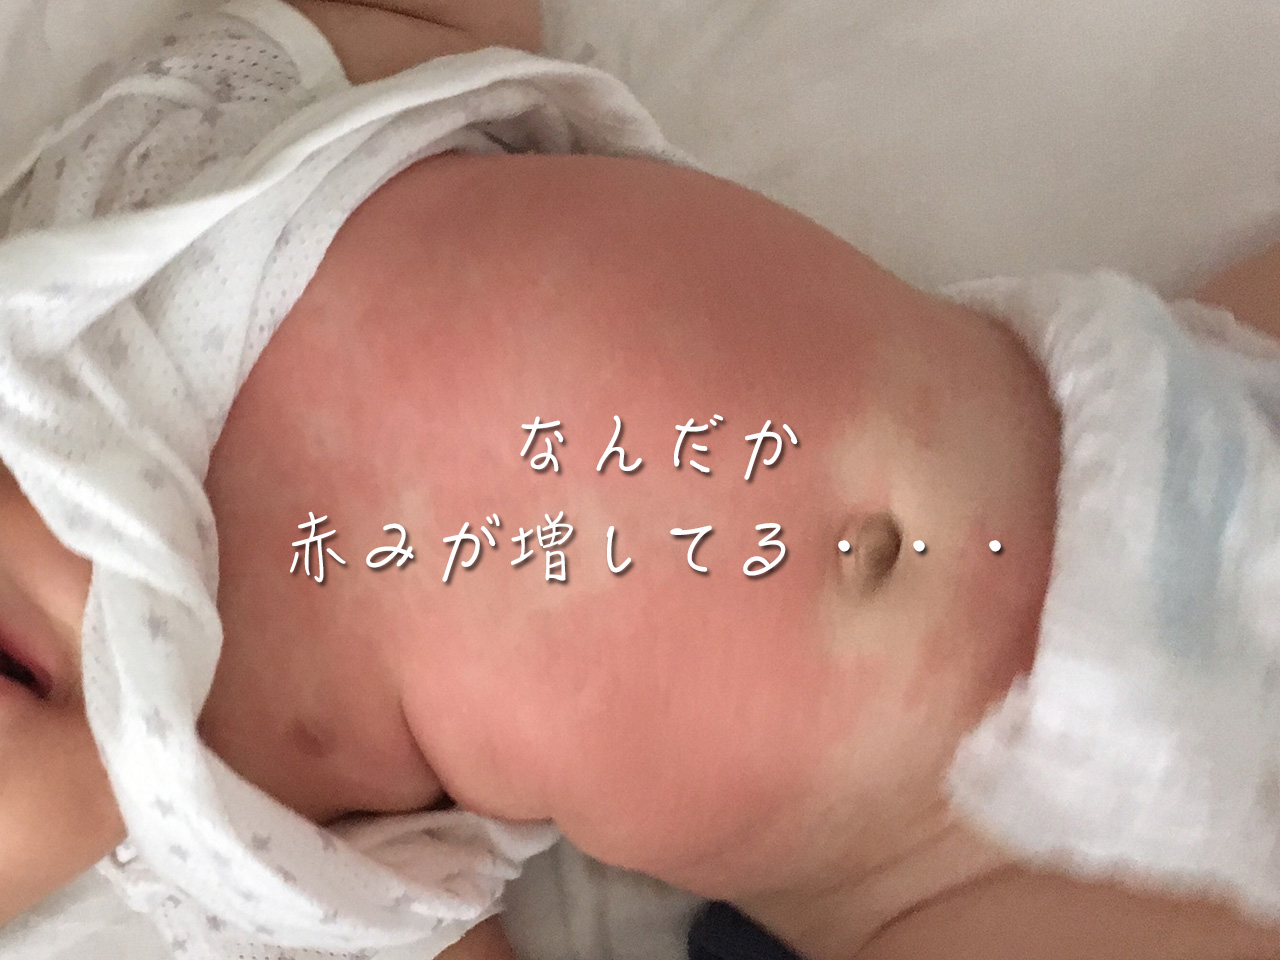 プランテーション 広告 おもしろい 赤ちゃん お腹 背中 湿疹 Hana Mochi Jp